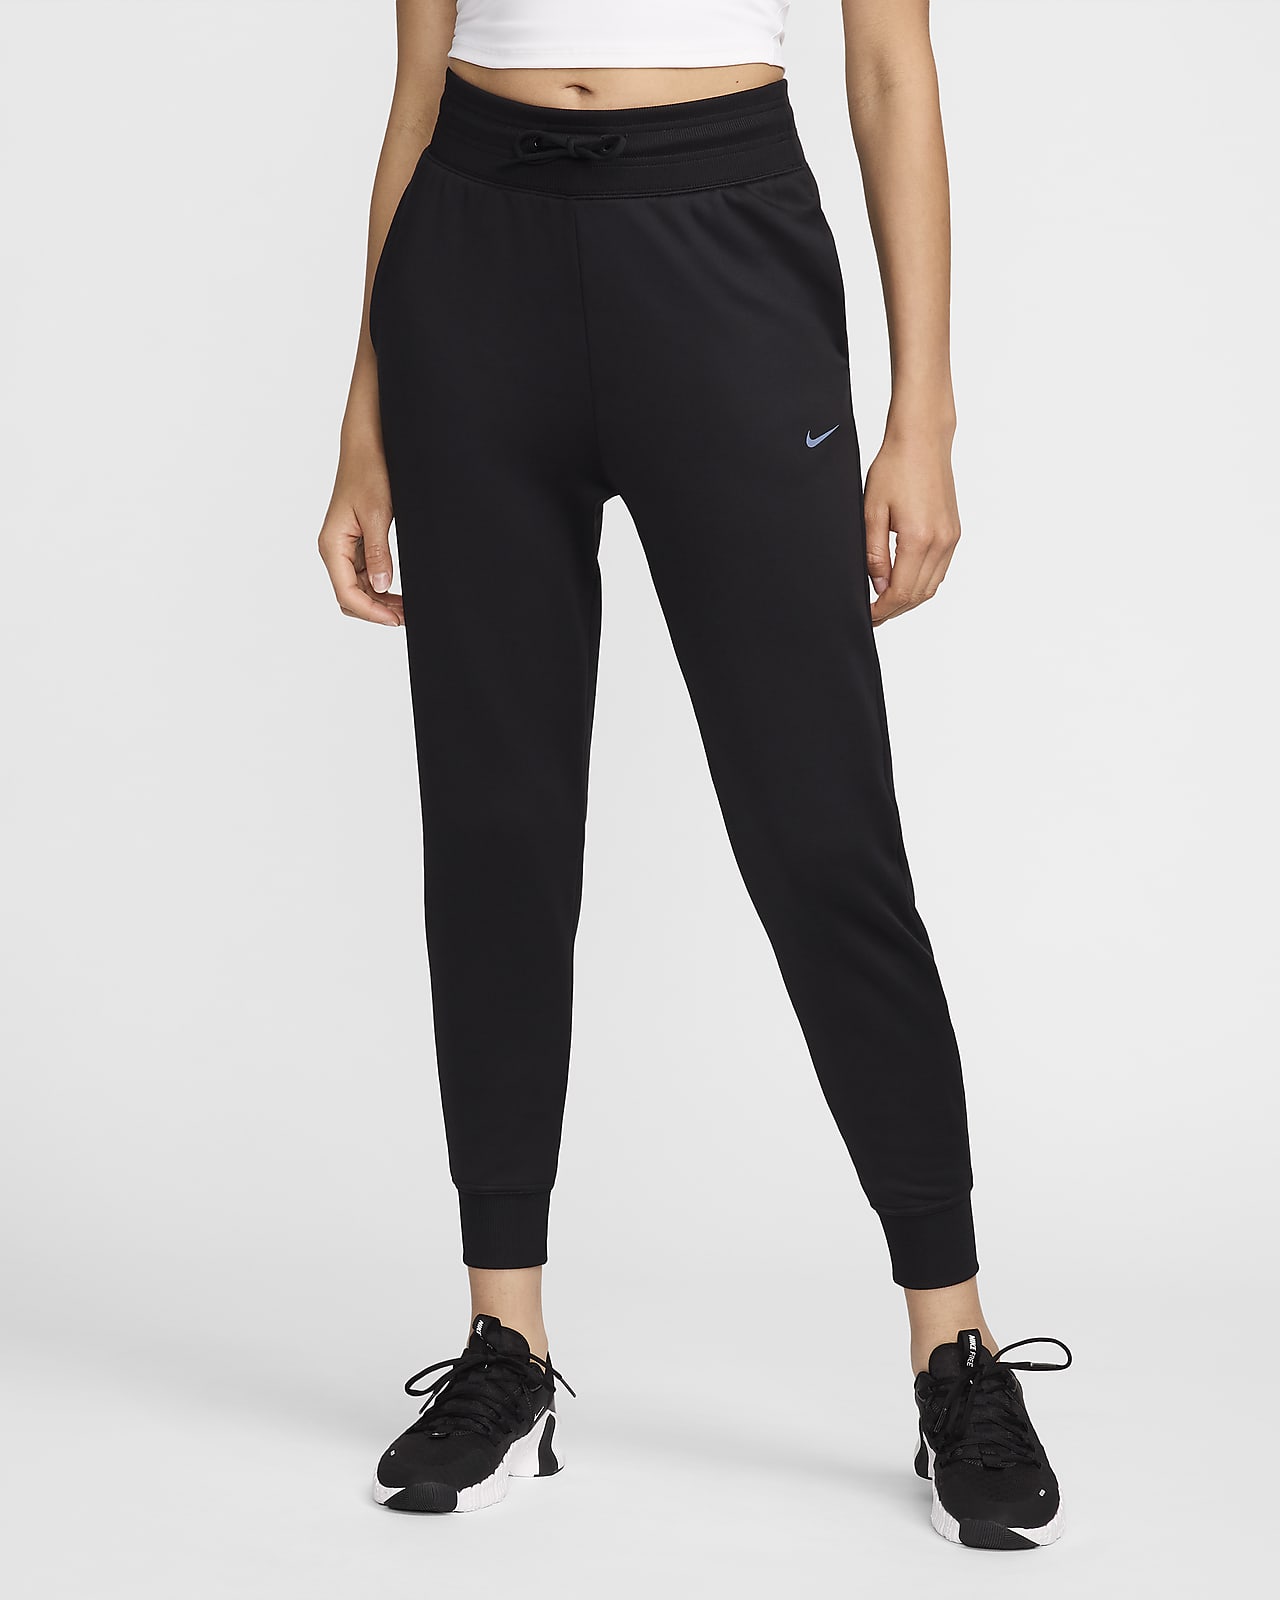 Pantalon de Fitness Nike Sportswear Essential pour Femme - Noir